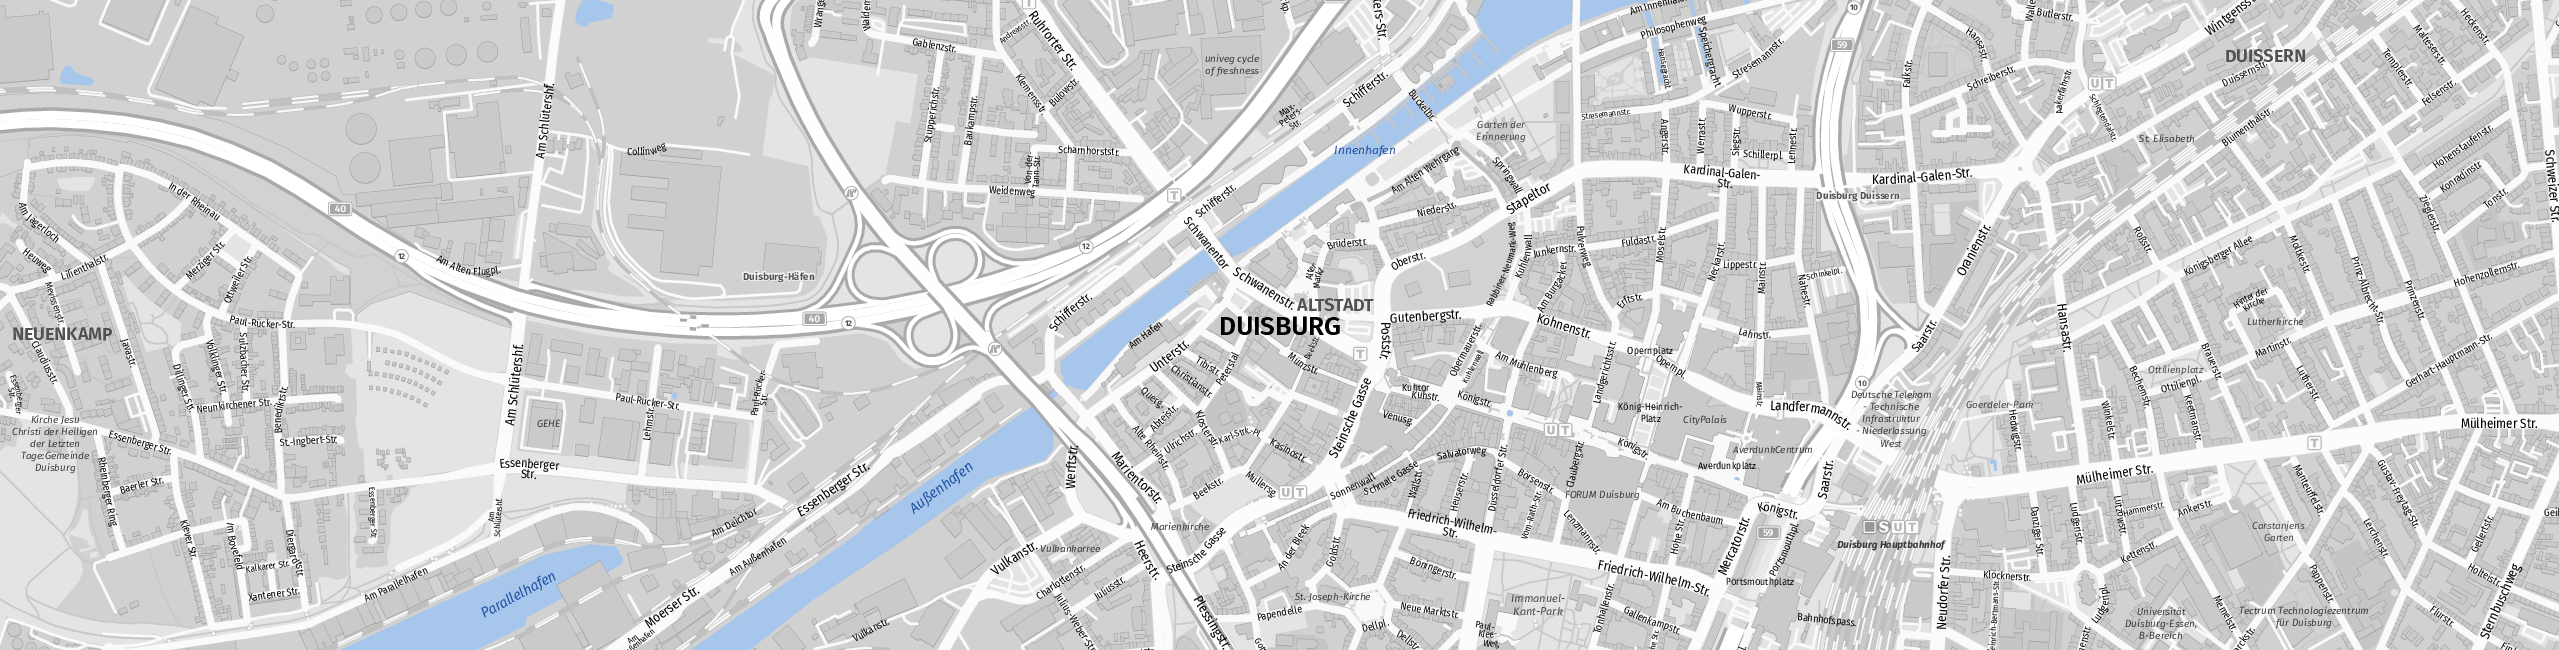 Stadtplan Duisburg zum Downloaden.